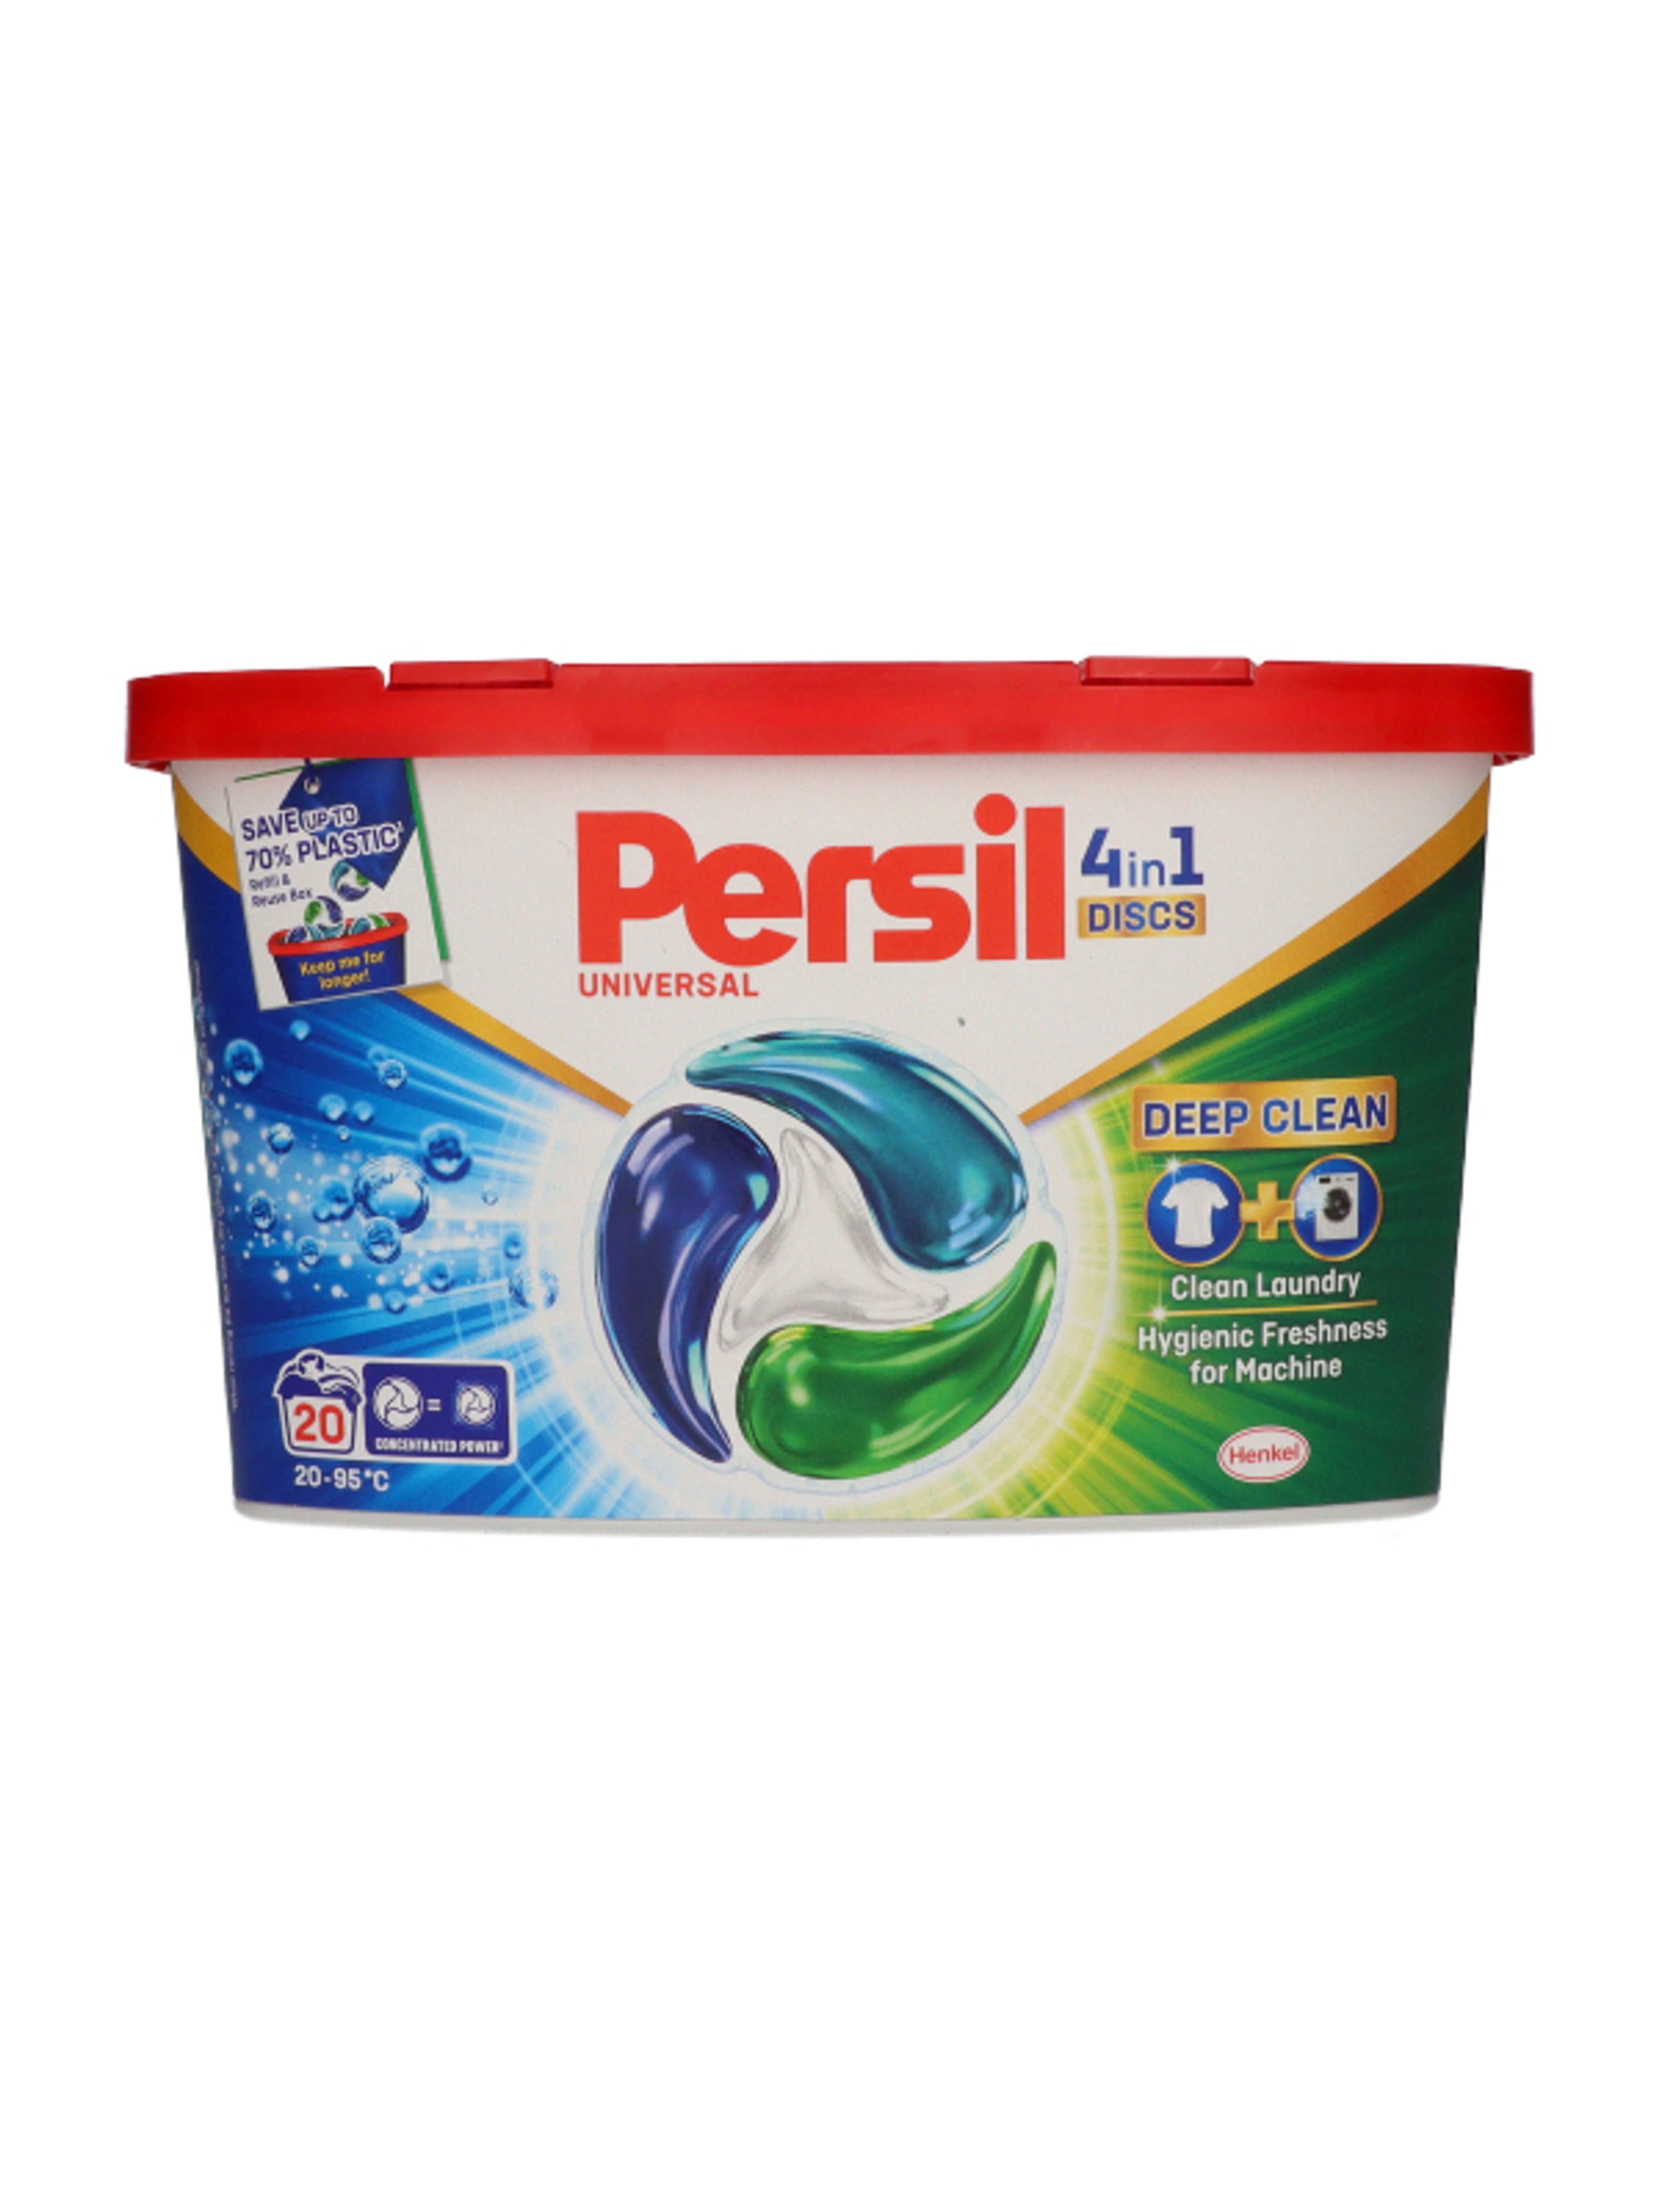 Persil Discs Universal mosókapszula 20 mosás - 20 db-3